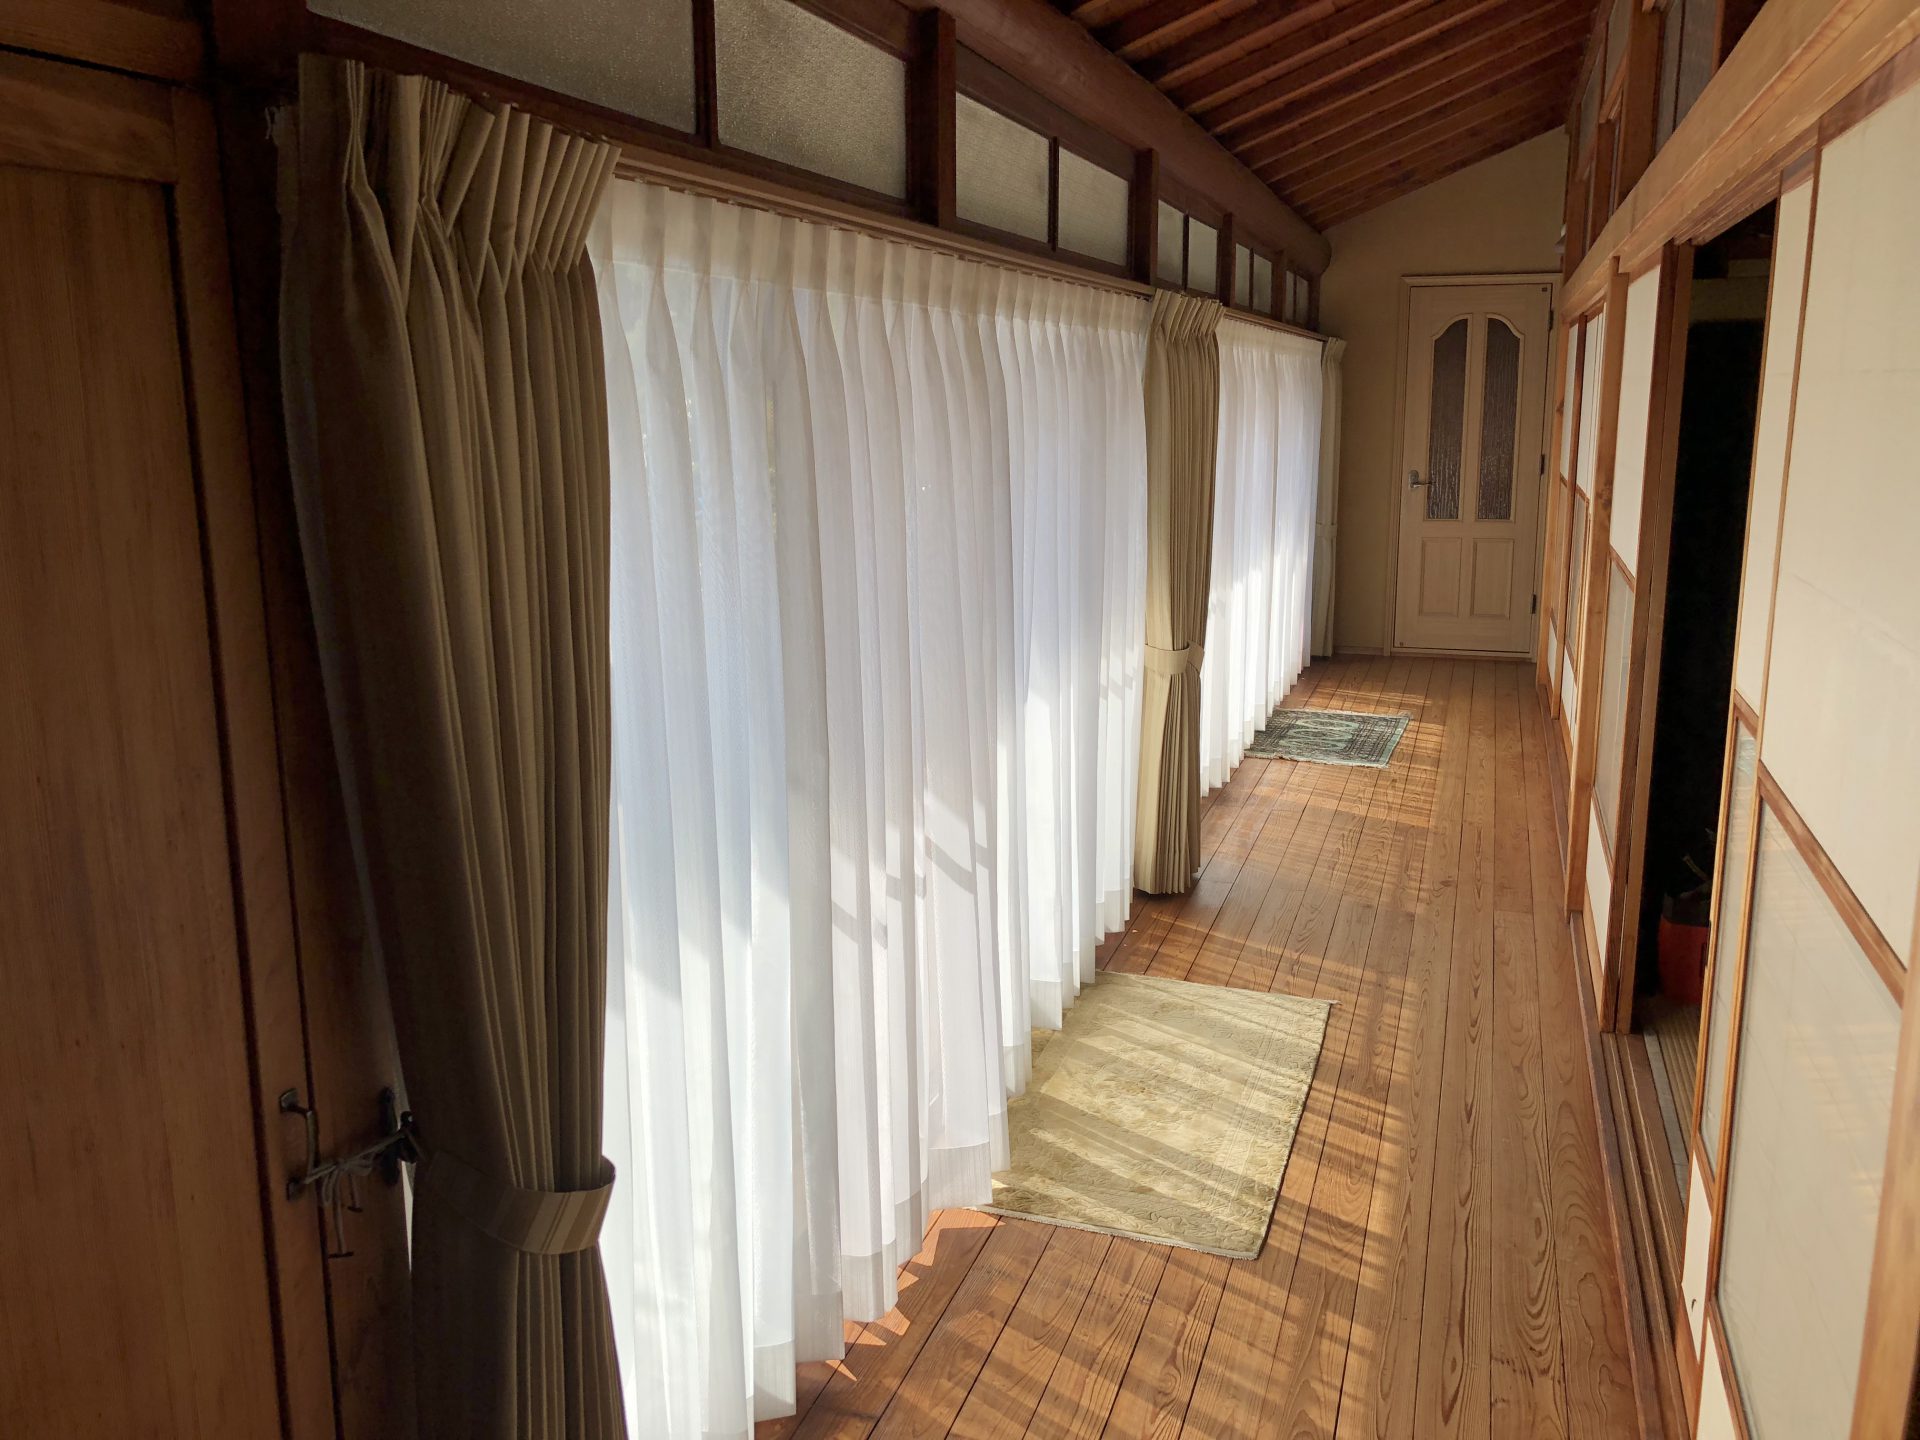 埼玉県さいたま市 広縁のカーテンのお取替えをしました エルム室内 熊谷市